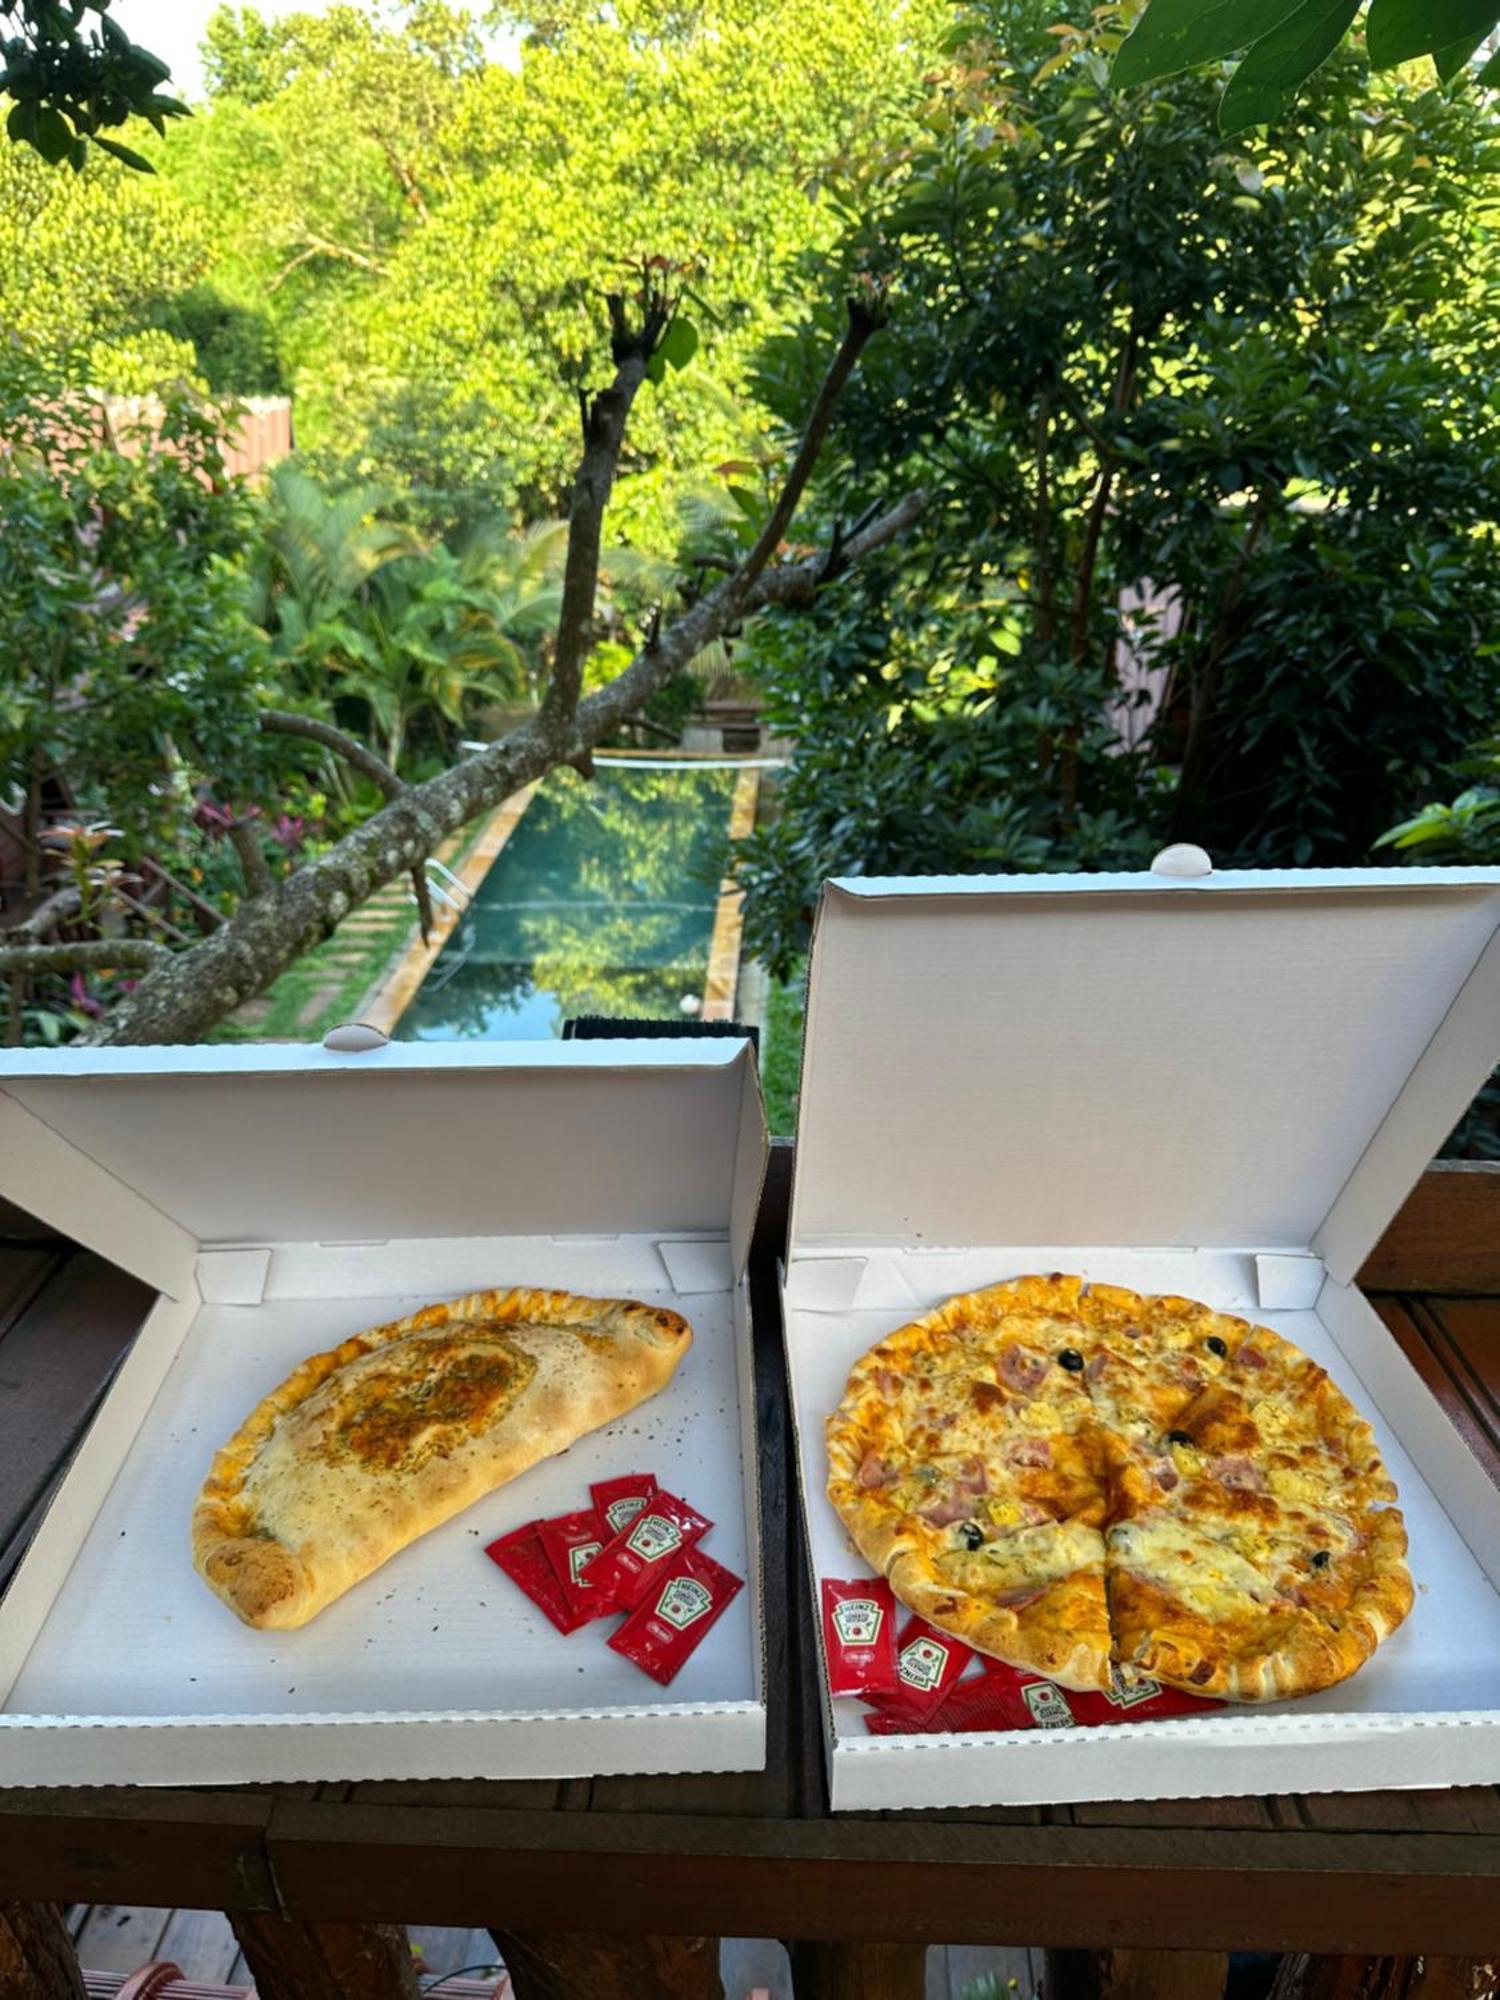 Mondulkiri Pizza Bungalows Sen Monorom Exterior photo